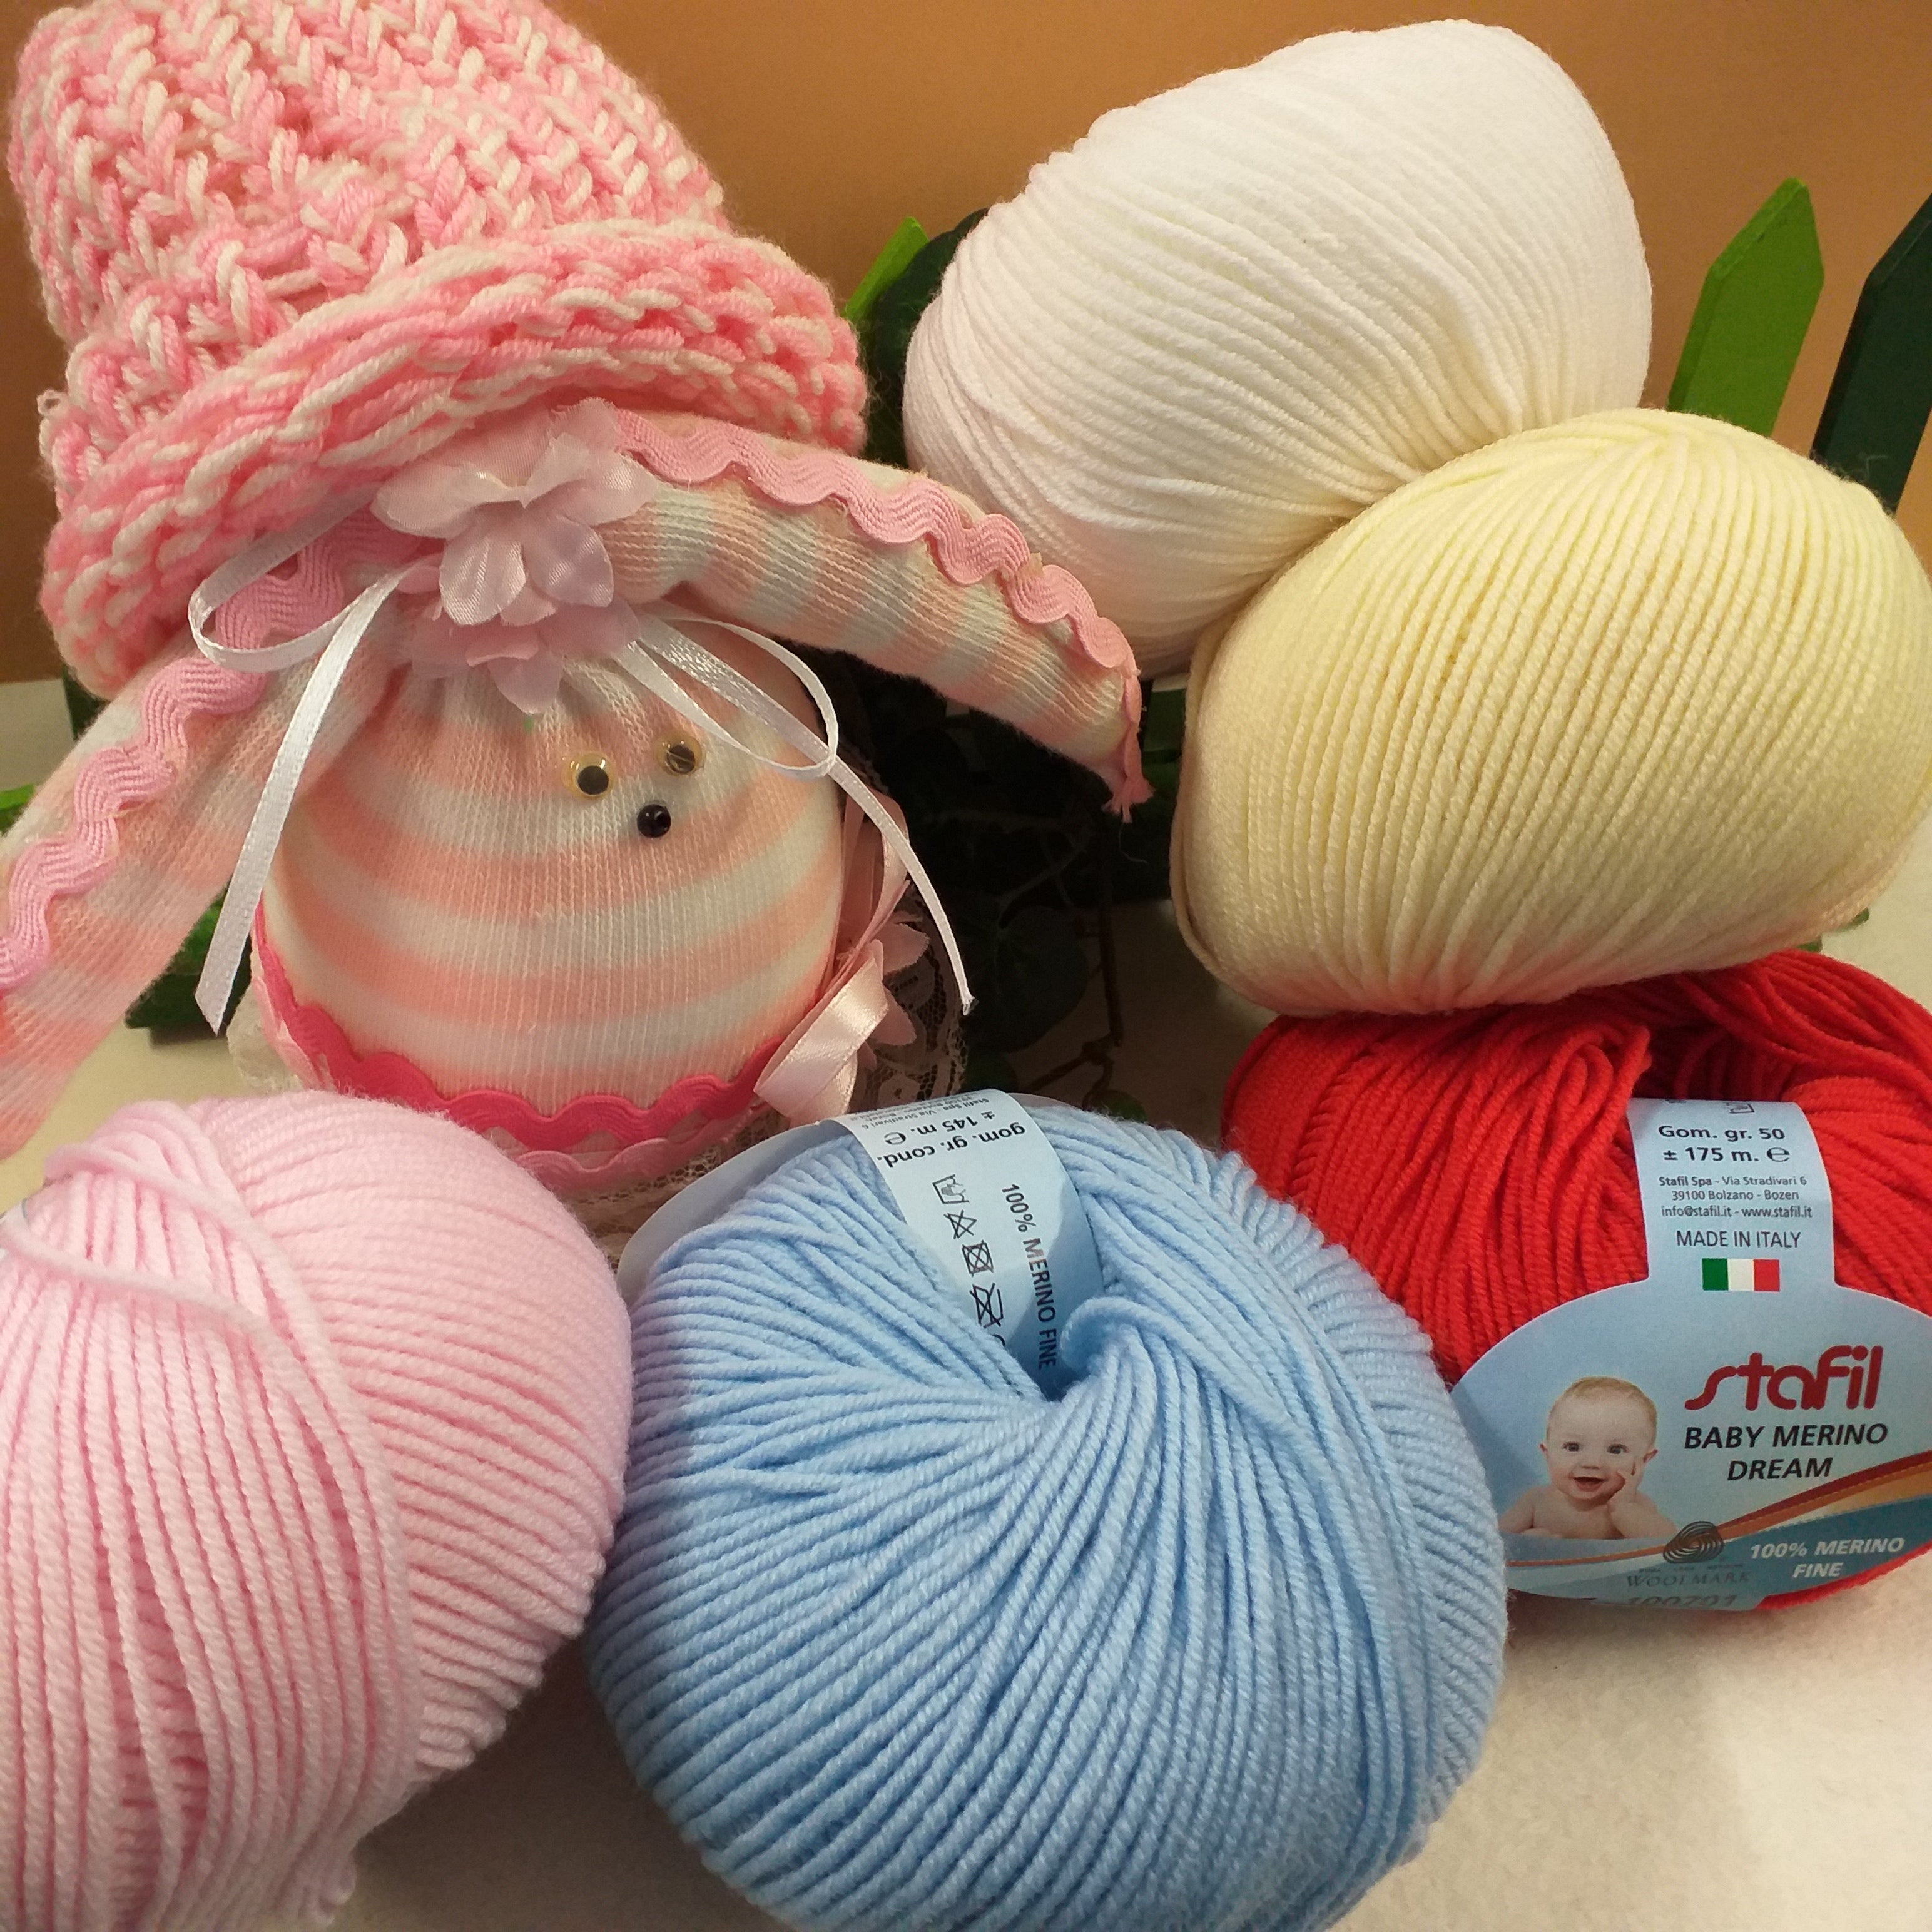 Filati uncinetto lana cotone ferri a maglia vendita online e negozio –  Tagged Stafil-Marianne-hobby – hobbyshopbomboniere